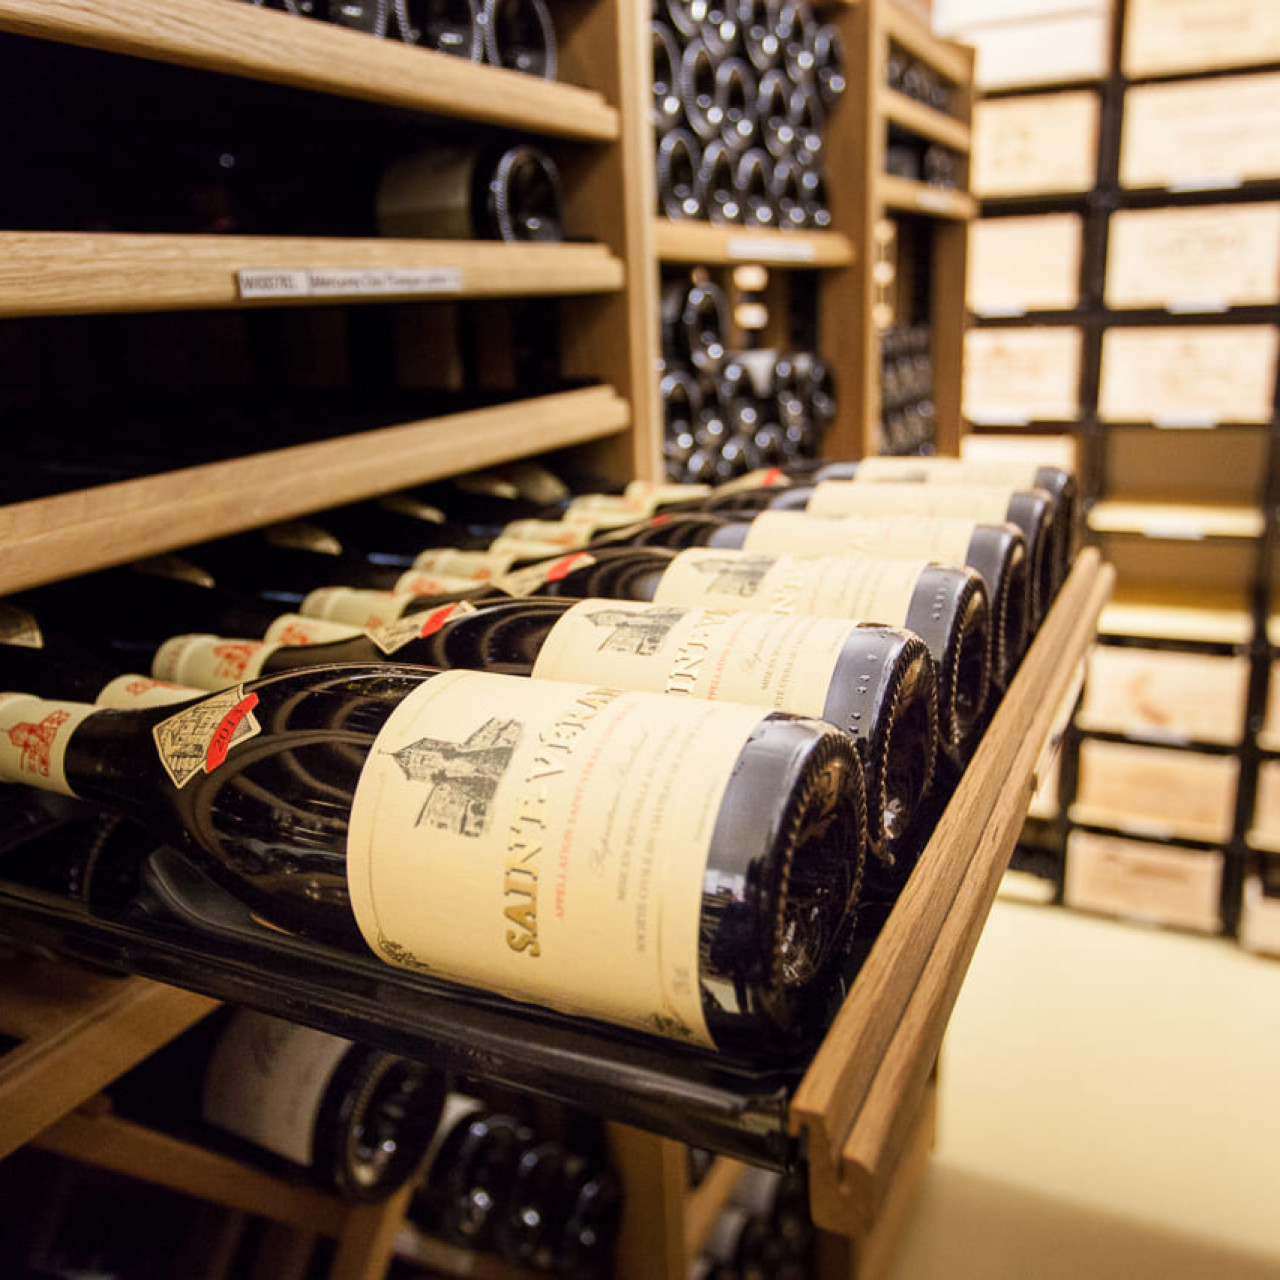 Flaschenregal mit verschiebbaren Regalen zur Klassifizierung Ihrer individuellen Weinsammlung mit sichtbaren Etiketten.